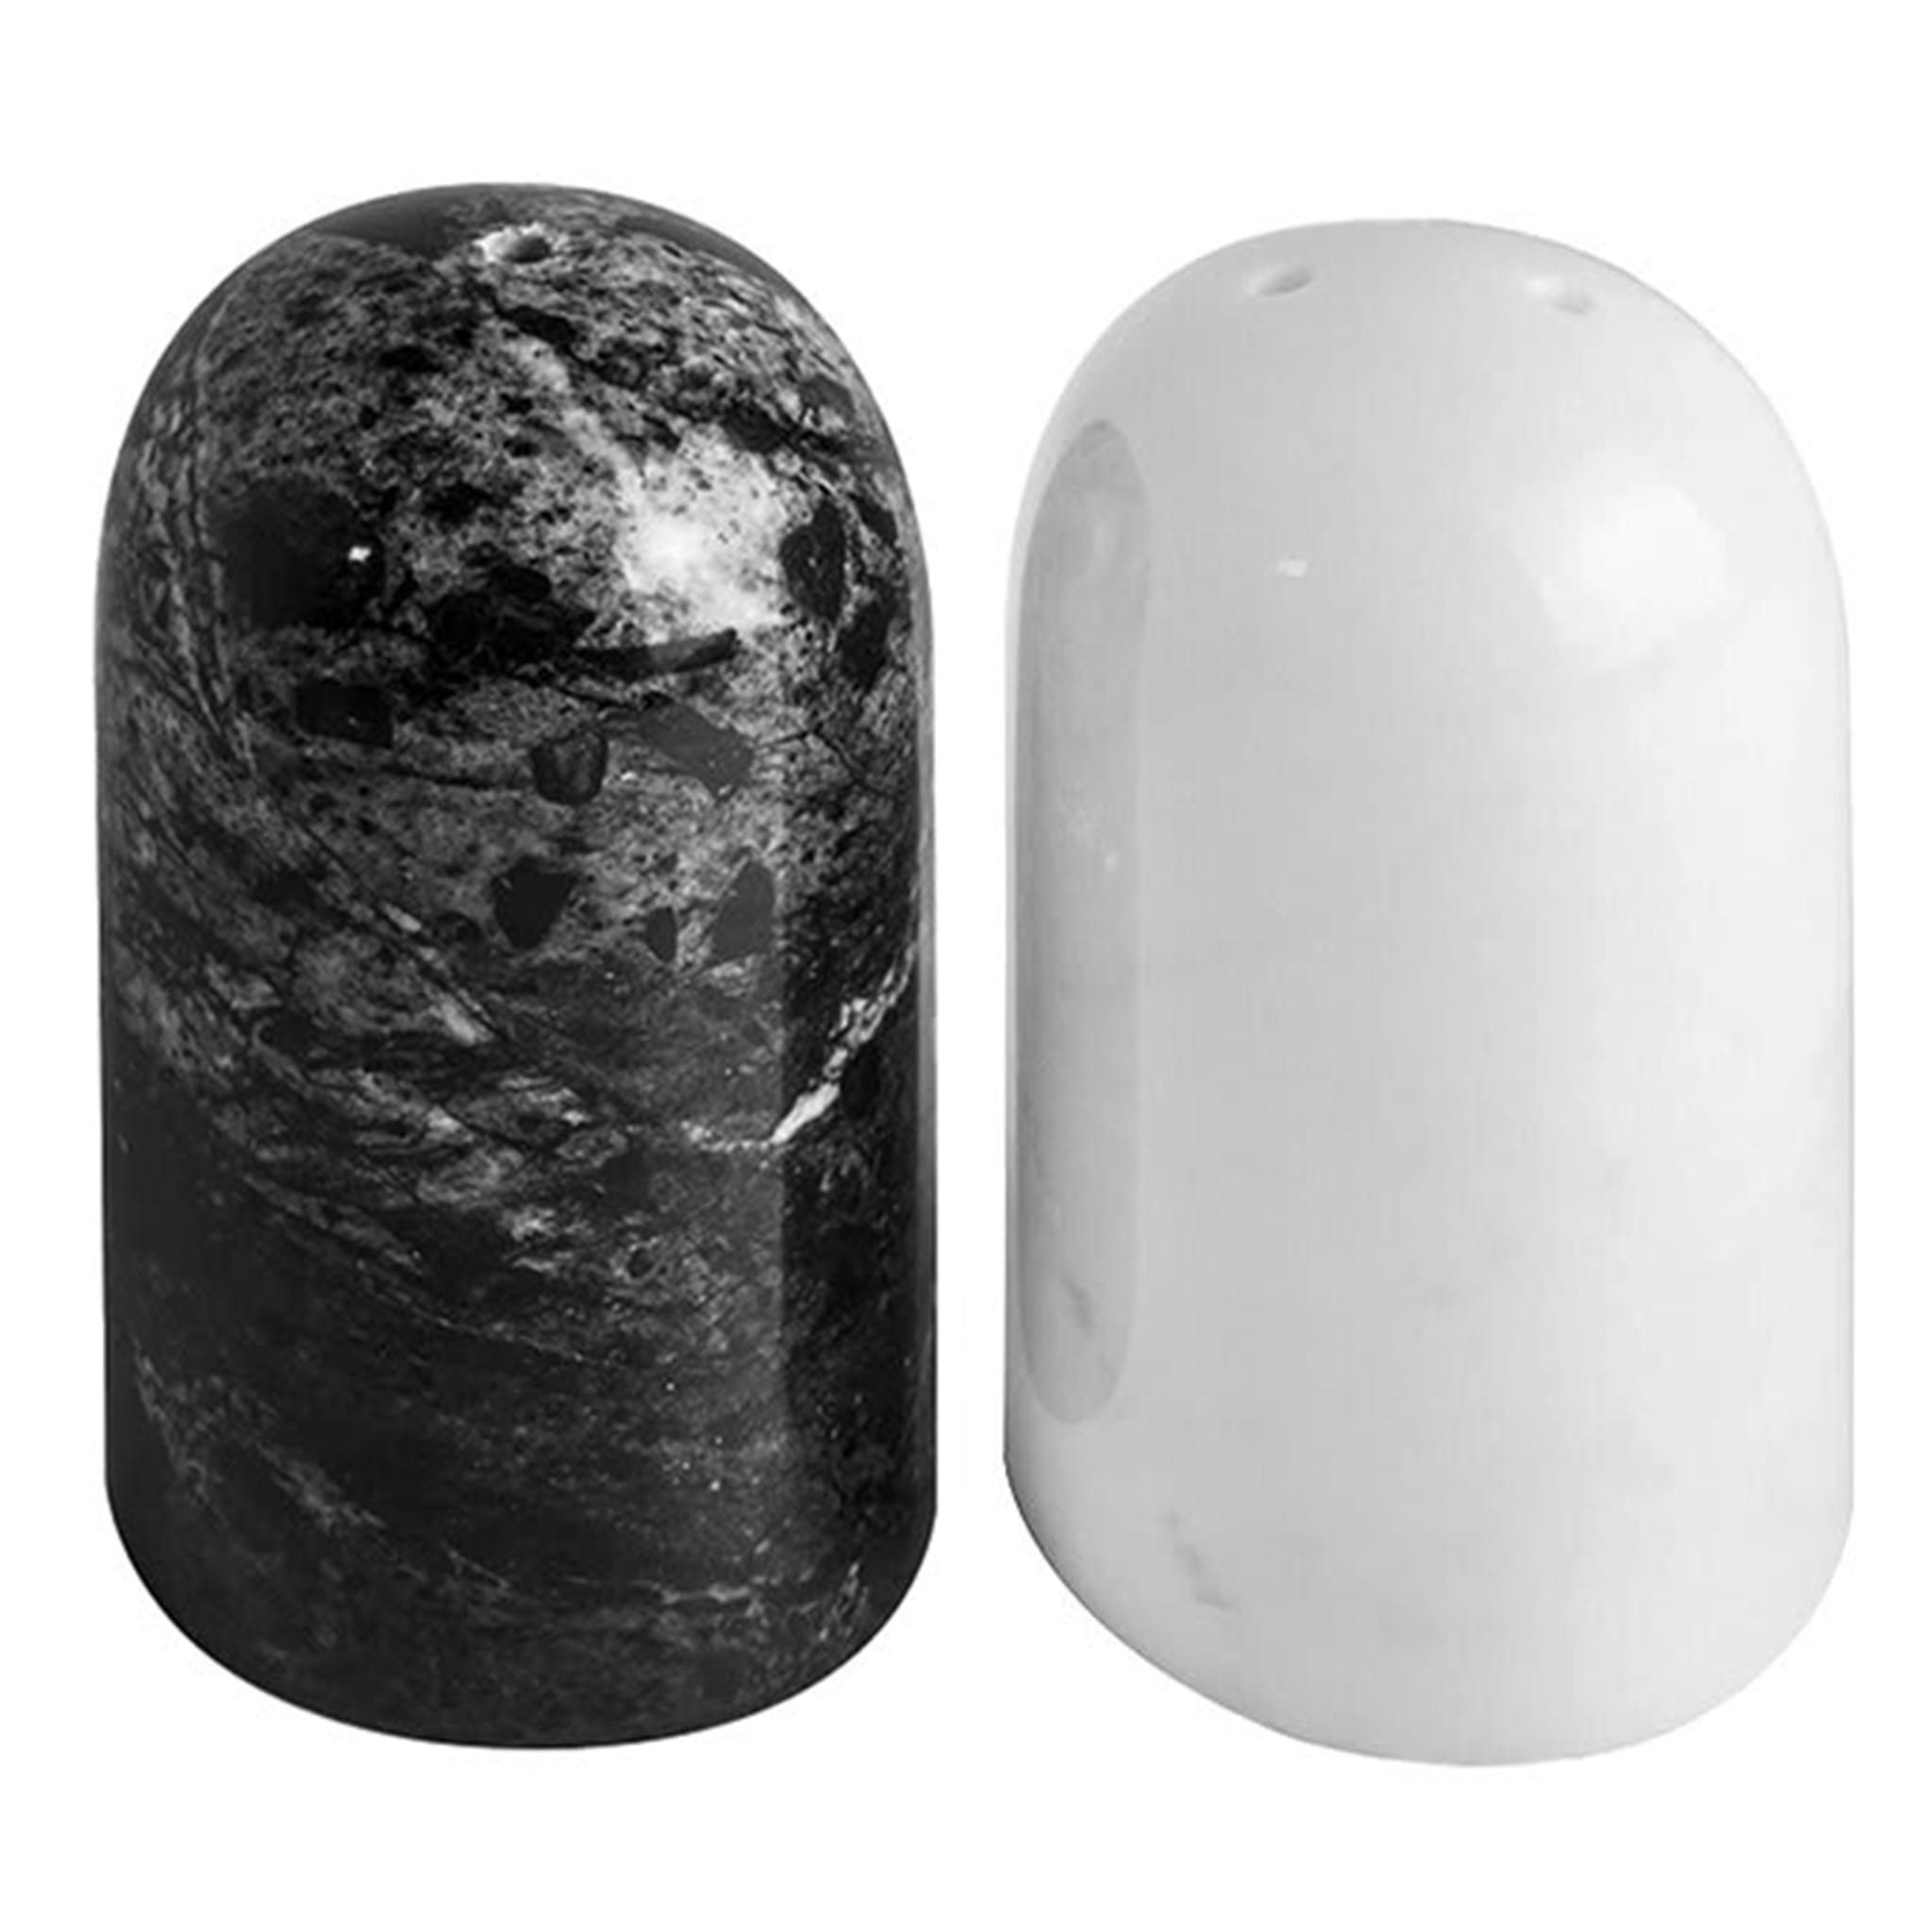 Sale e pepe in marmo bianco e nero  - Vista principale